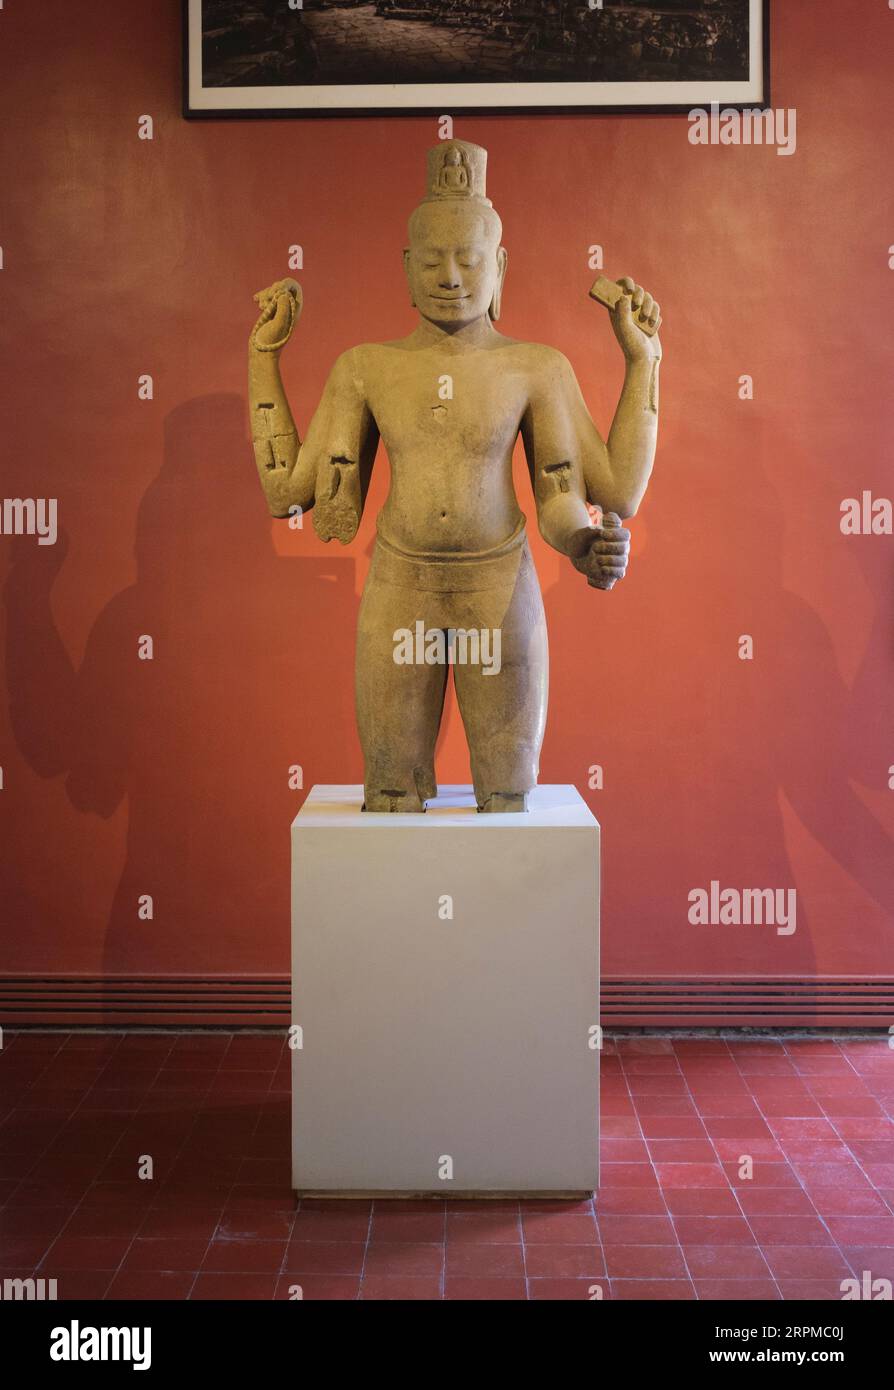 Kambodscha: Ende des 12. Jahrhunderts, Sandstein, Lokeshvara (Avalokiteshvara)-Statue im Bayon-Stil vom Tor der Toten, Angkor Thom, heute im Nationalmuseum von Kambodscha, Phnom Penh, untergebracht. Das Nationalmuseum befindet sich in einem roten Pavillon aus dem Jahr 1918 und beherbergt eine Sammlung von Khmer-Kunst, darunter einige der schönsten Stücke der Welt. Zu den Exponaten gehören eine Vishnu-Statue aus dem 6. Jahrhundert, eine Shiva-Statue aus dem 9. Jahrhundert und der berühmte, in meditativer Pose geformte Kopf von Jayavarman VII. Besonders beeindruckend ist die beschädigte Büste eines liegenden Vishnu. Stockfoto